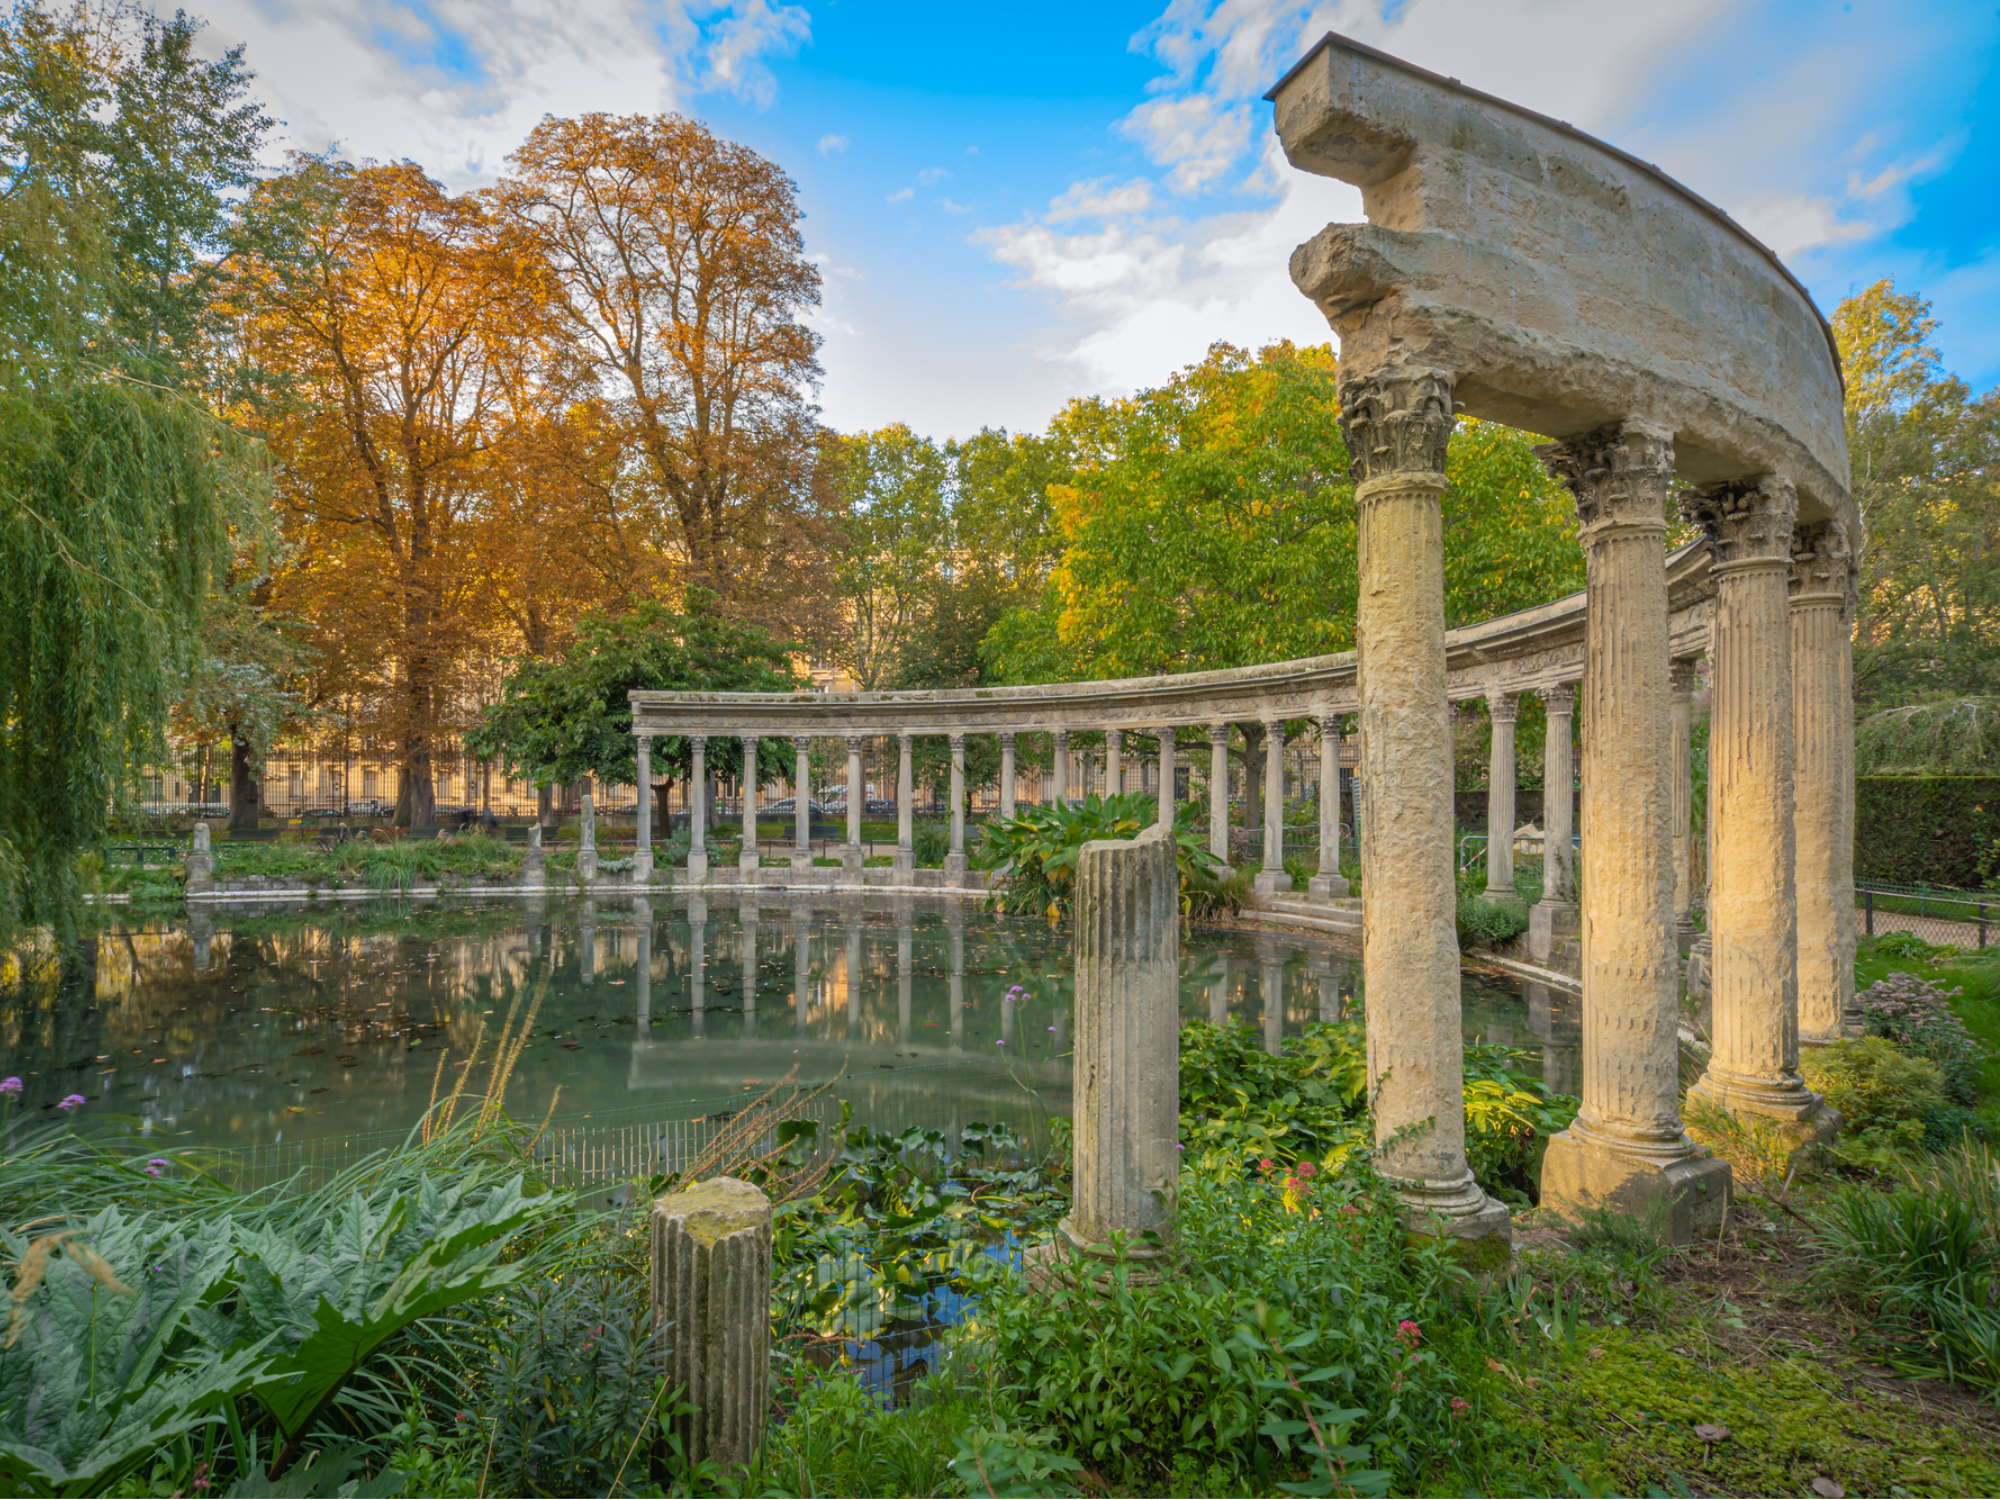 Les 8 plus beaux parcs et jardins à voir à Paris